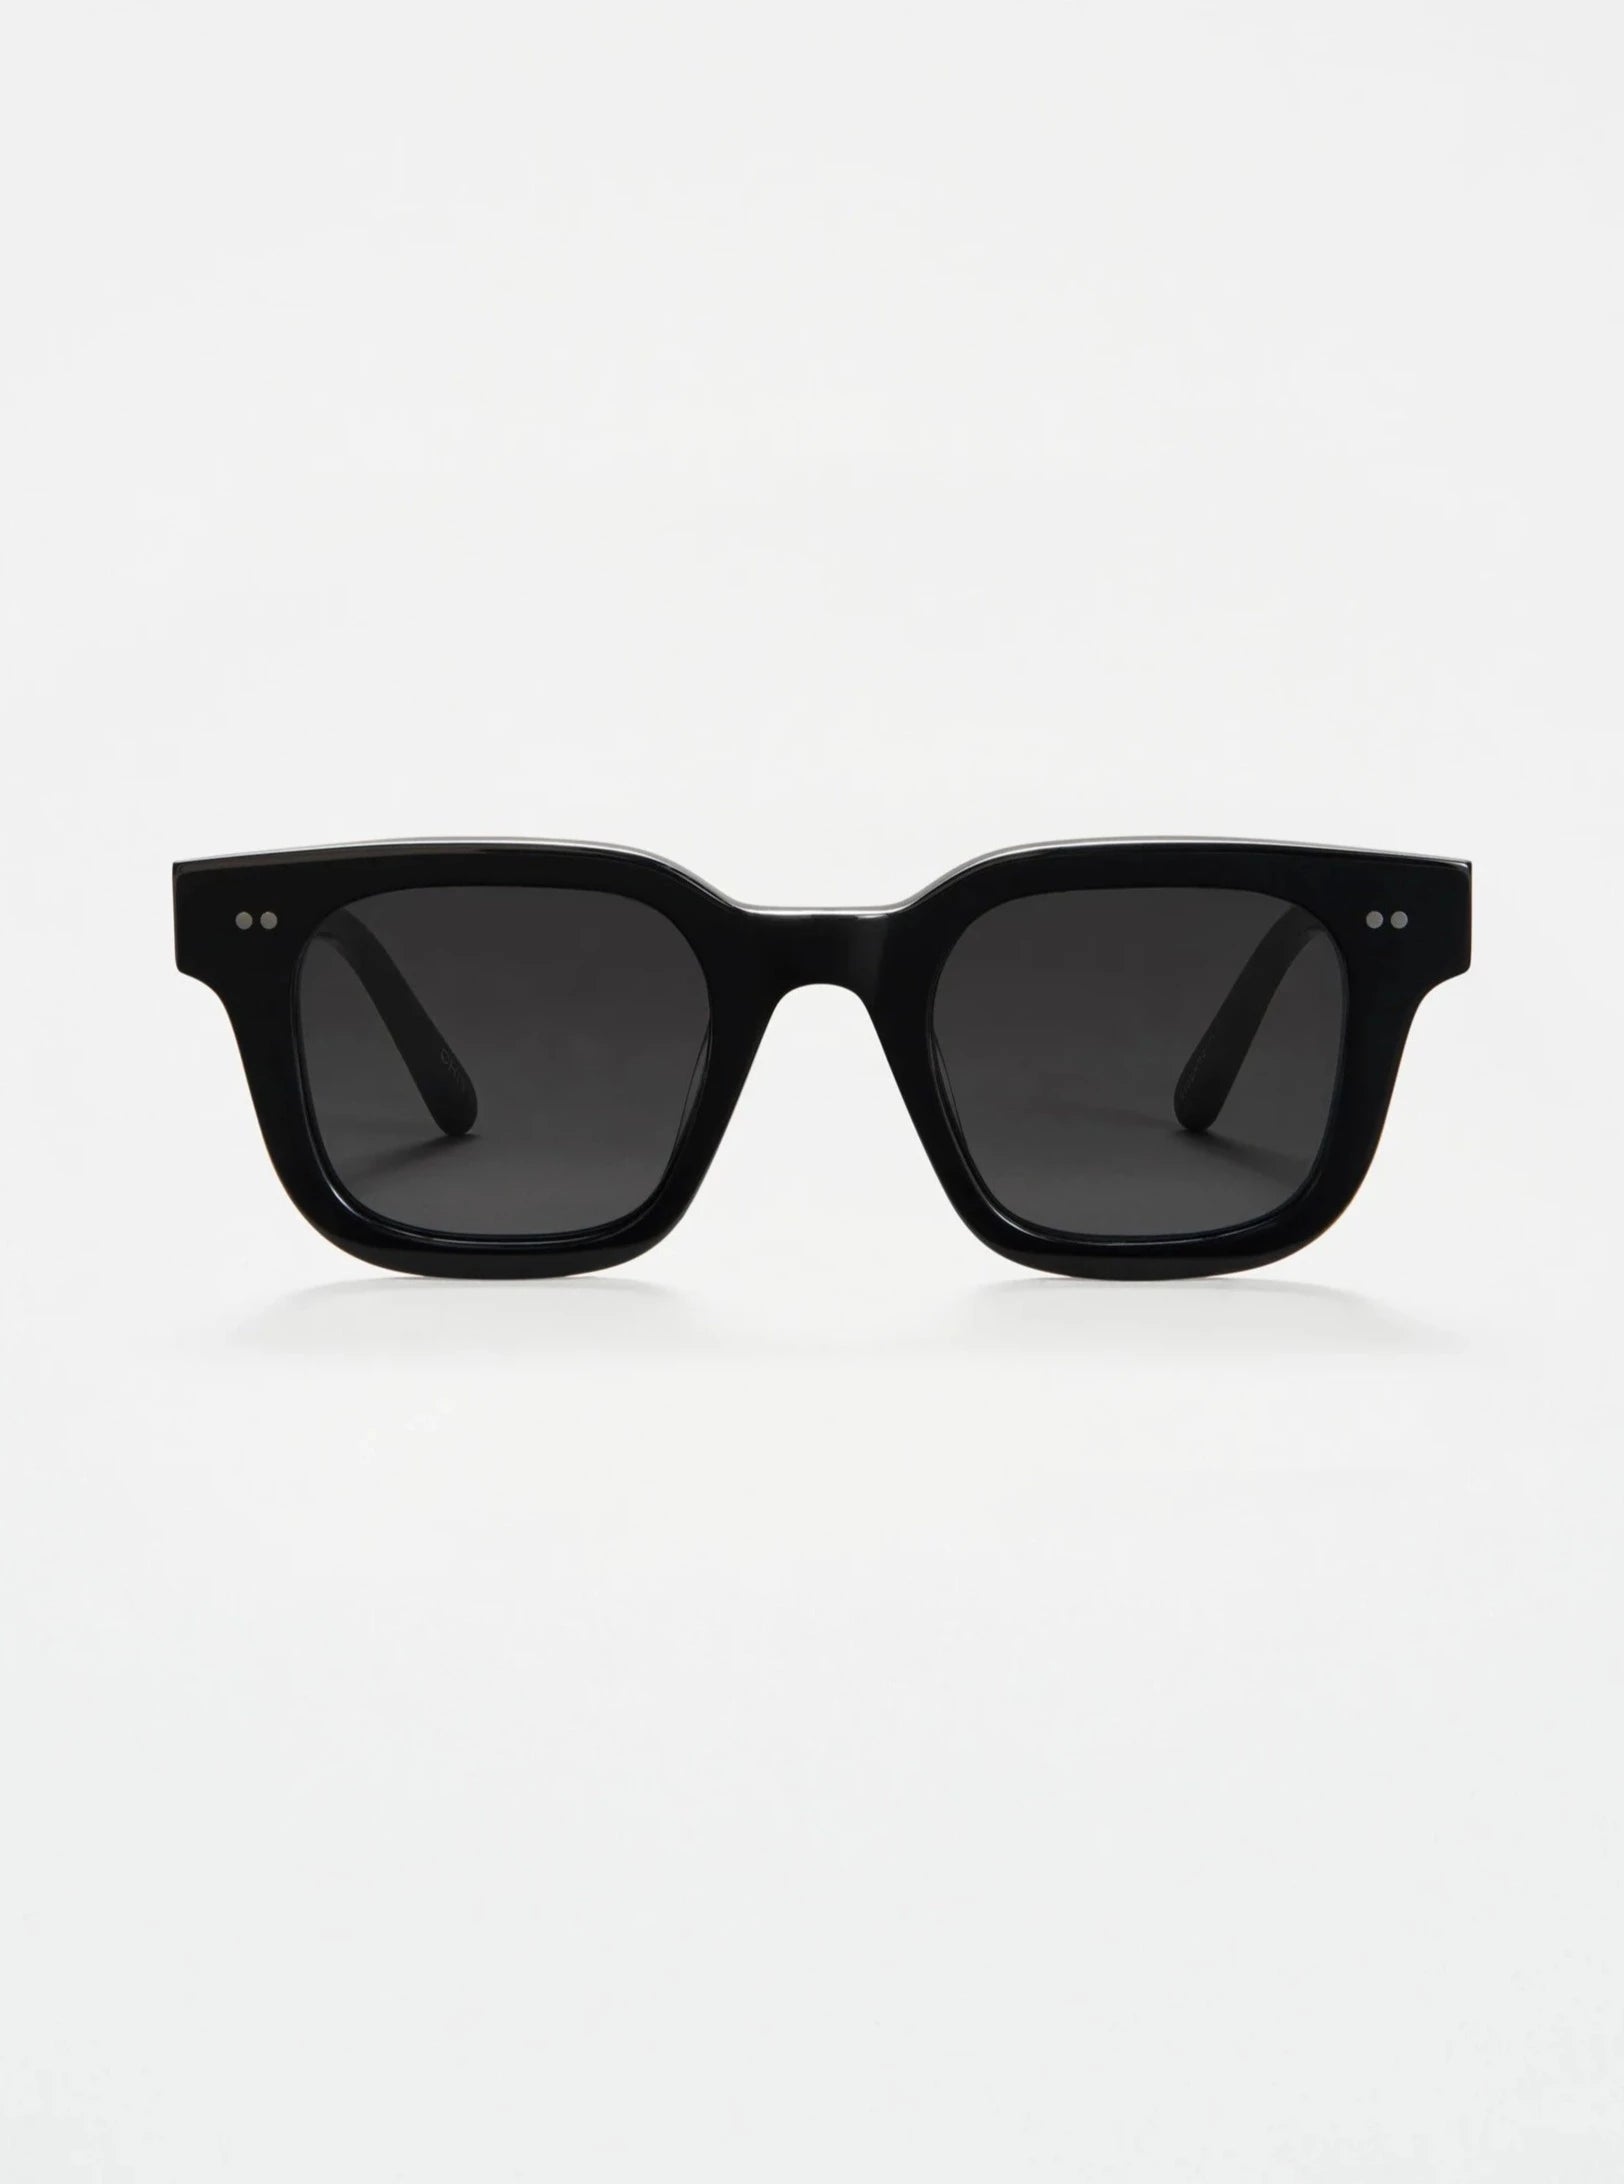 Chimi 04 sunglasses - Black - Vincent Park - {{shop.address.city}} {{ shop.address.country }}